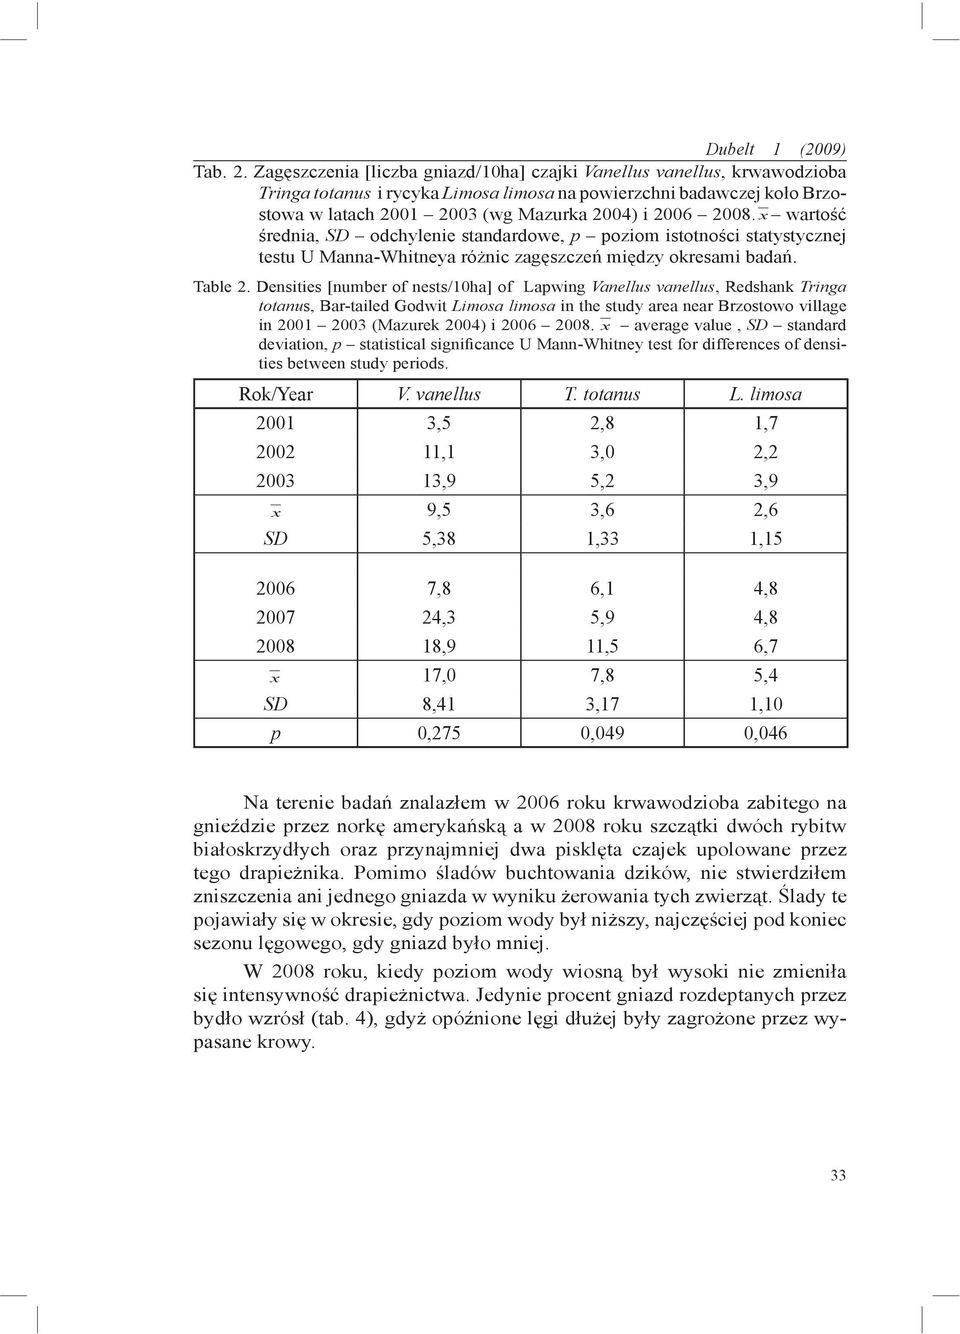 x wartość średnia, SD odchylenie standardowe, p poziom istotności statystycznej testu U Manna-Whitneya różnic zagęszczeń między okresami badań. Table 2.